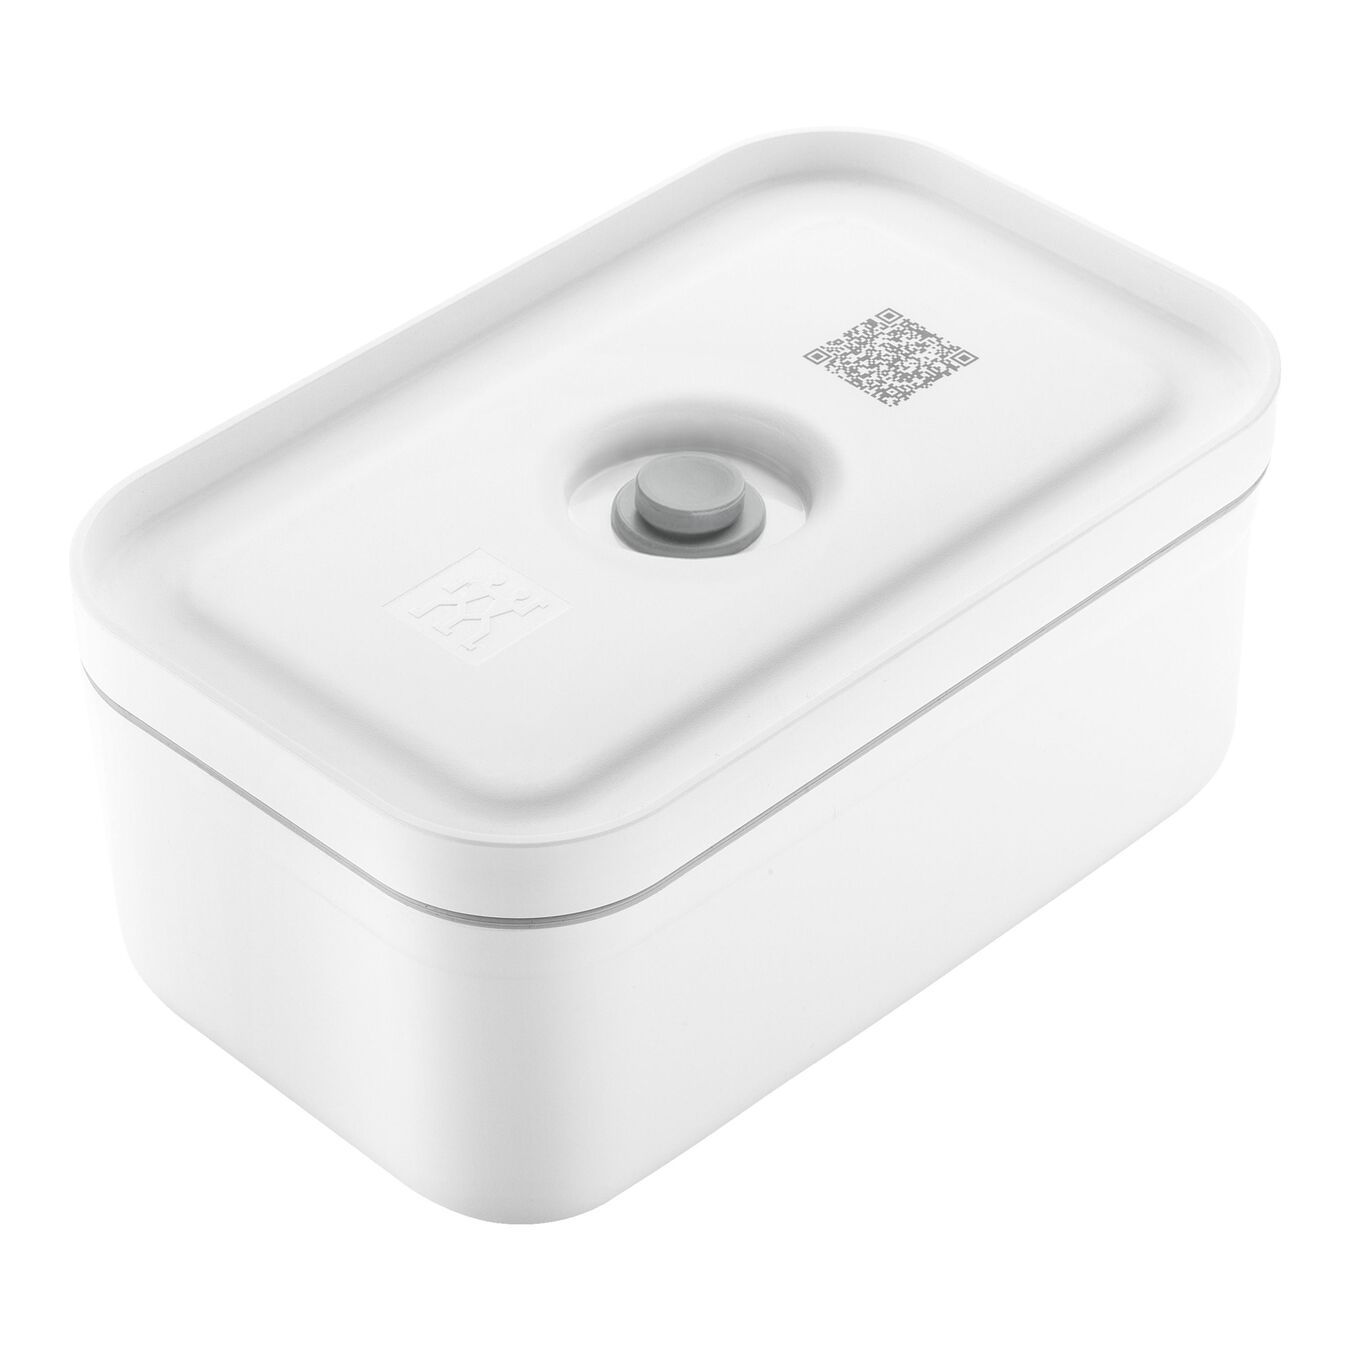 Lunch box sottovuoto M, plastica, bianco-grigio,,large 1